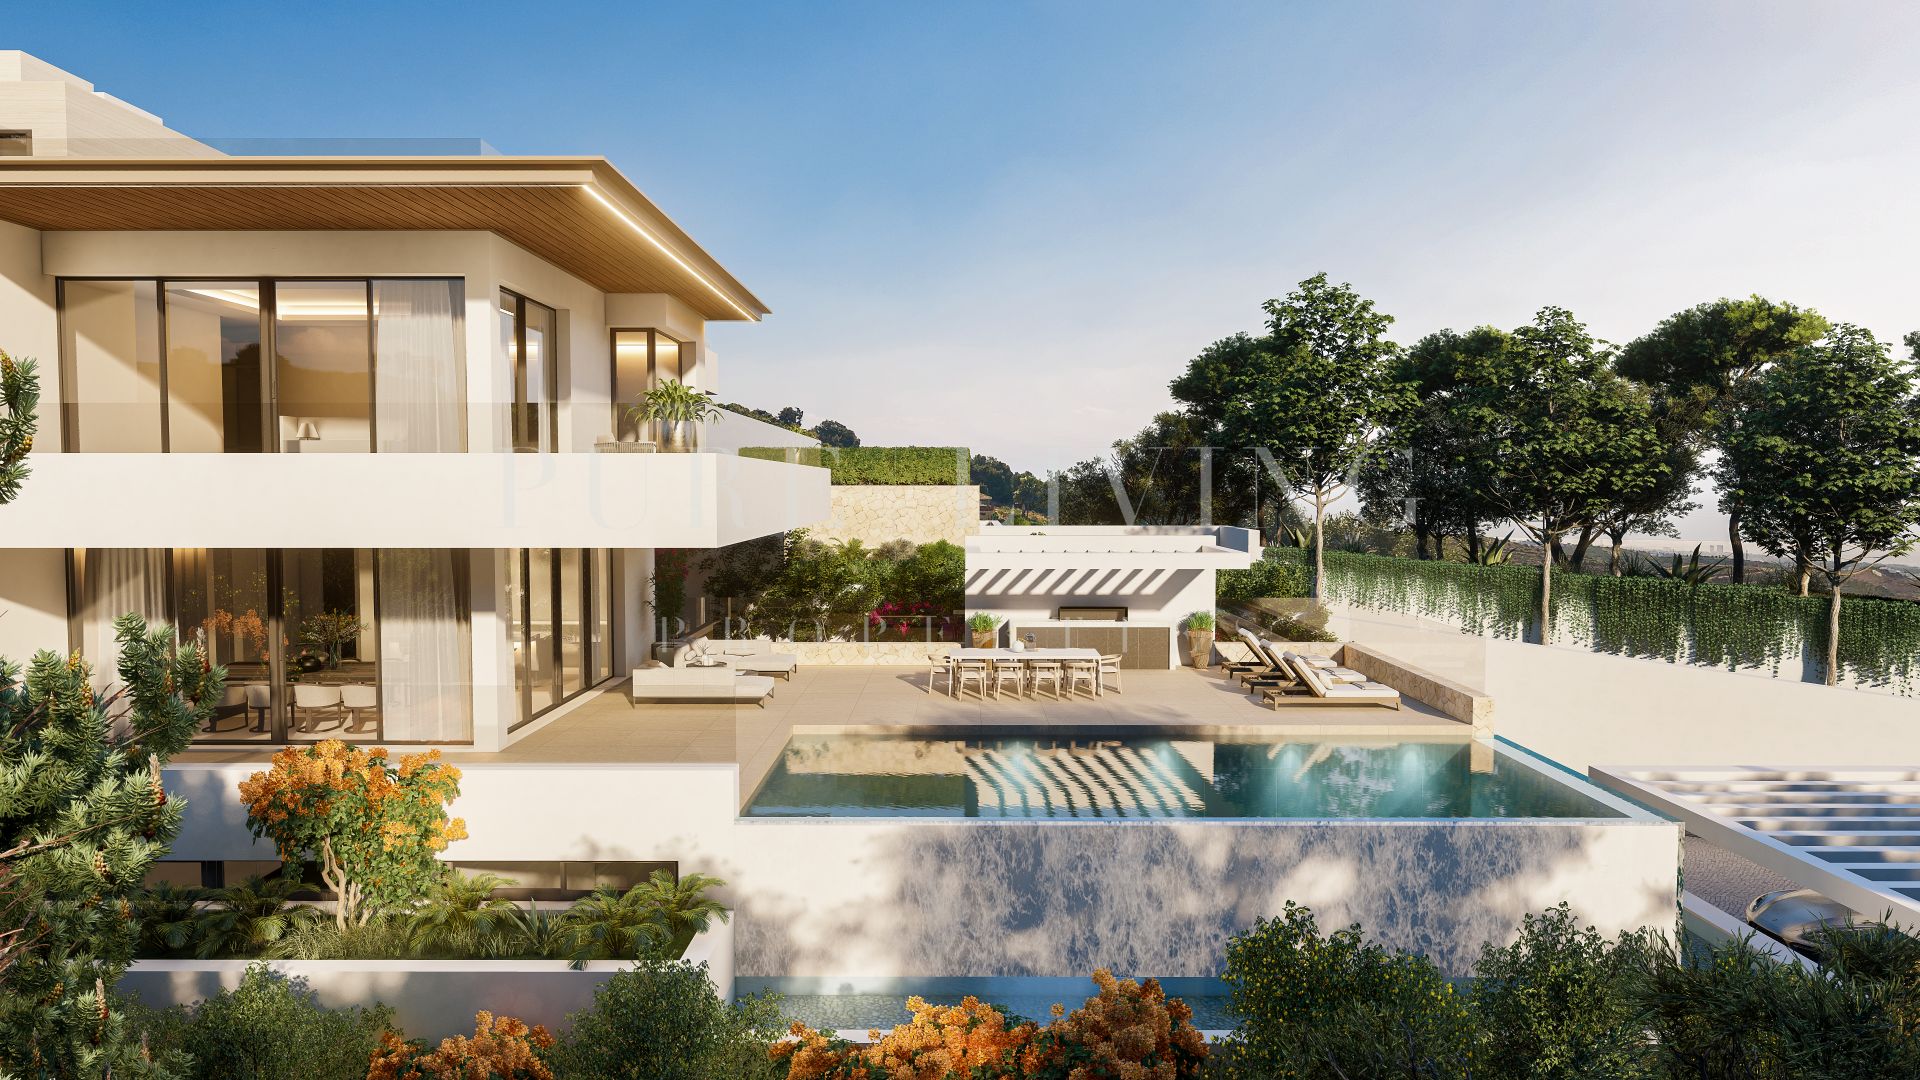 Exquisite villa with stunning sea views located in prime location, Altos de Los Monteros